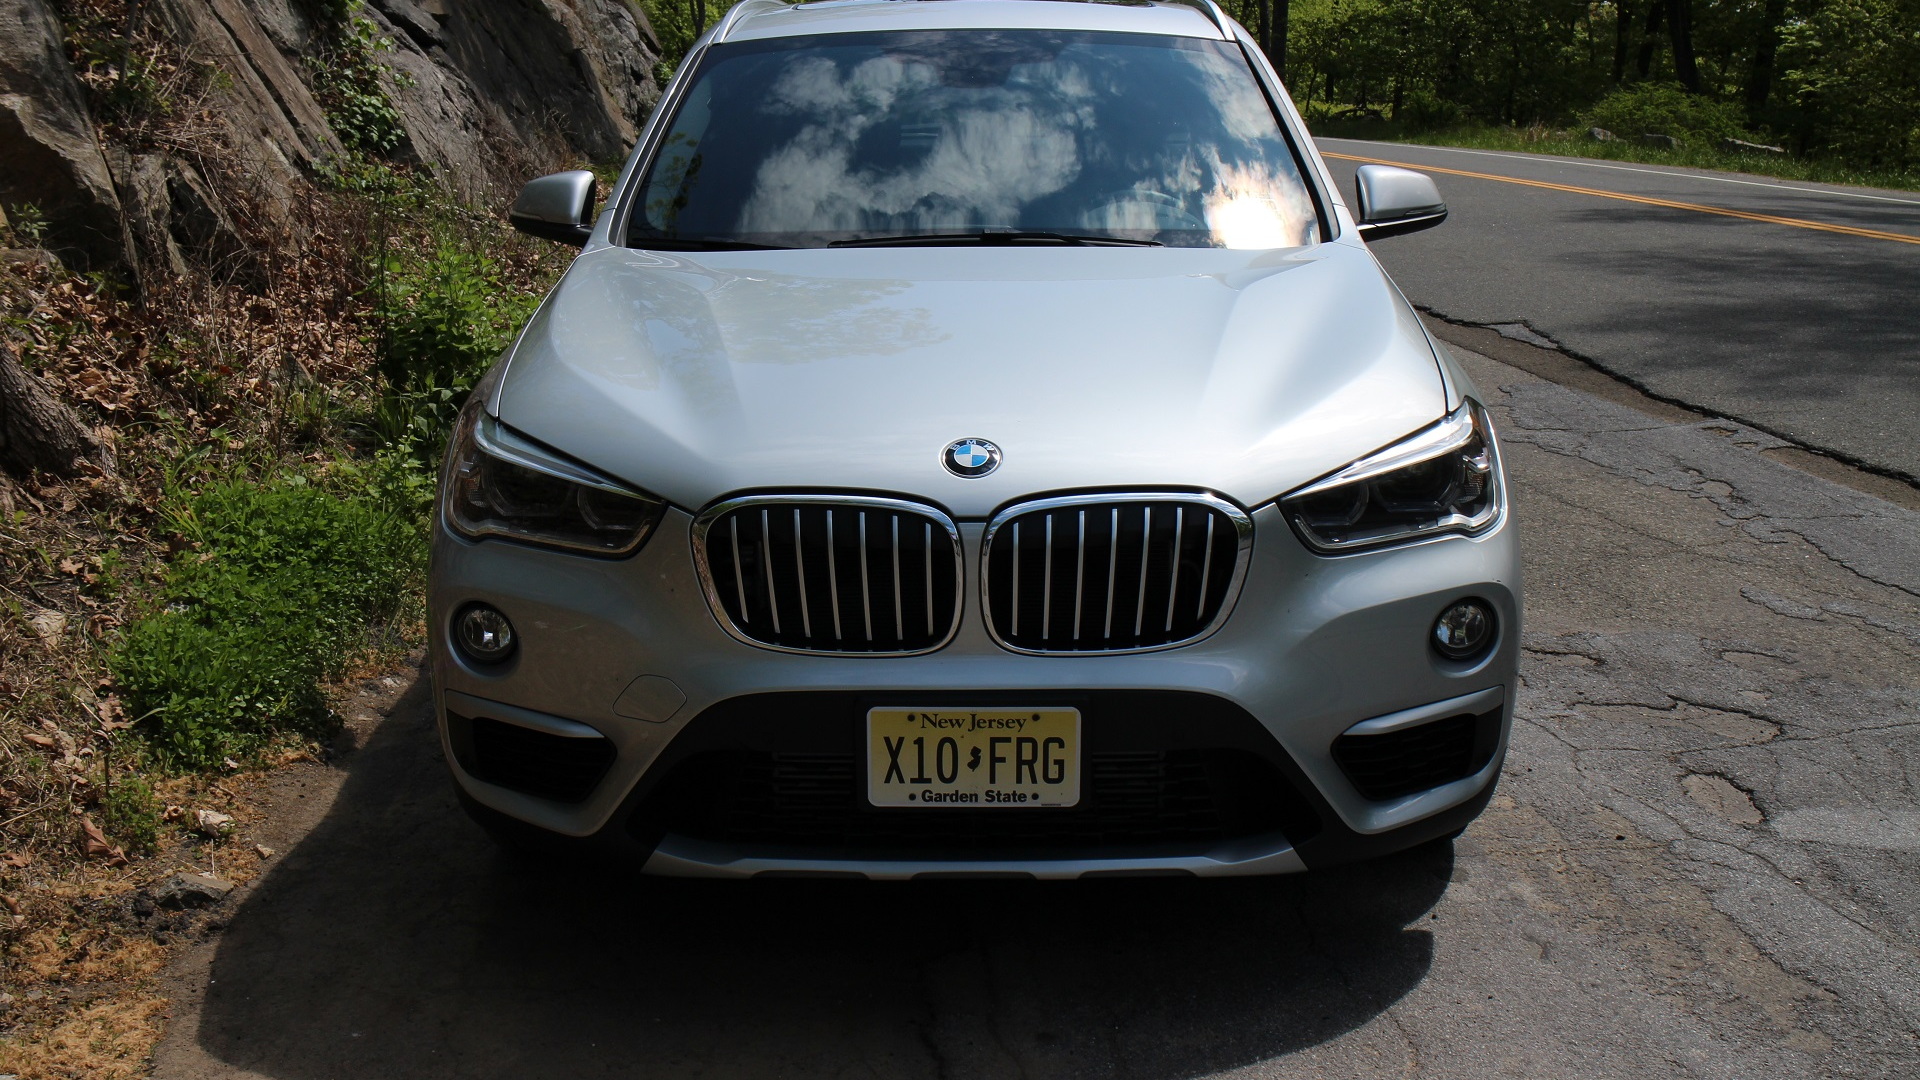 2016 BMW X1 xDrive 28i, Bear Mountain, NY, May 2016